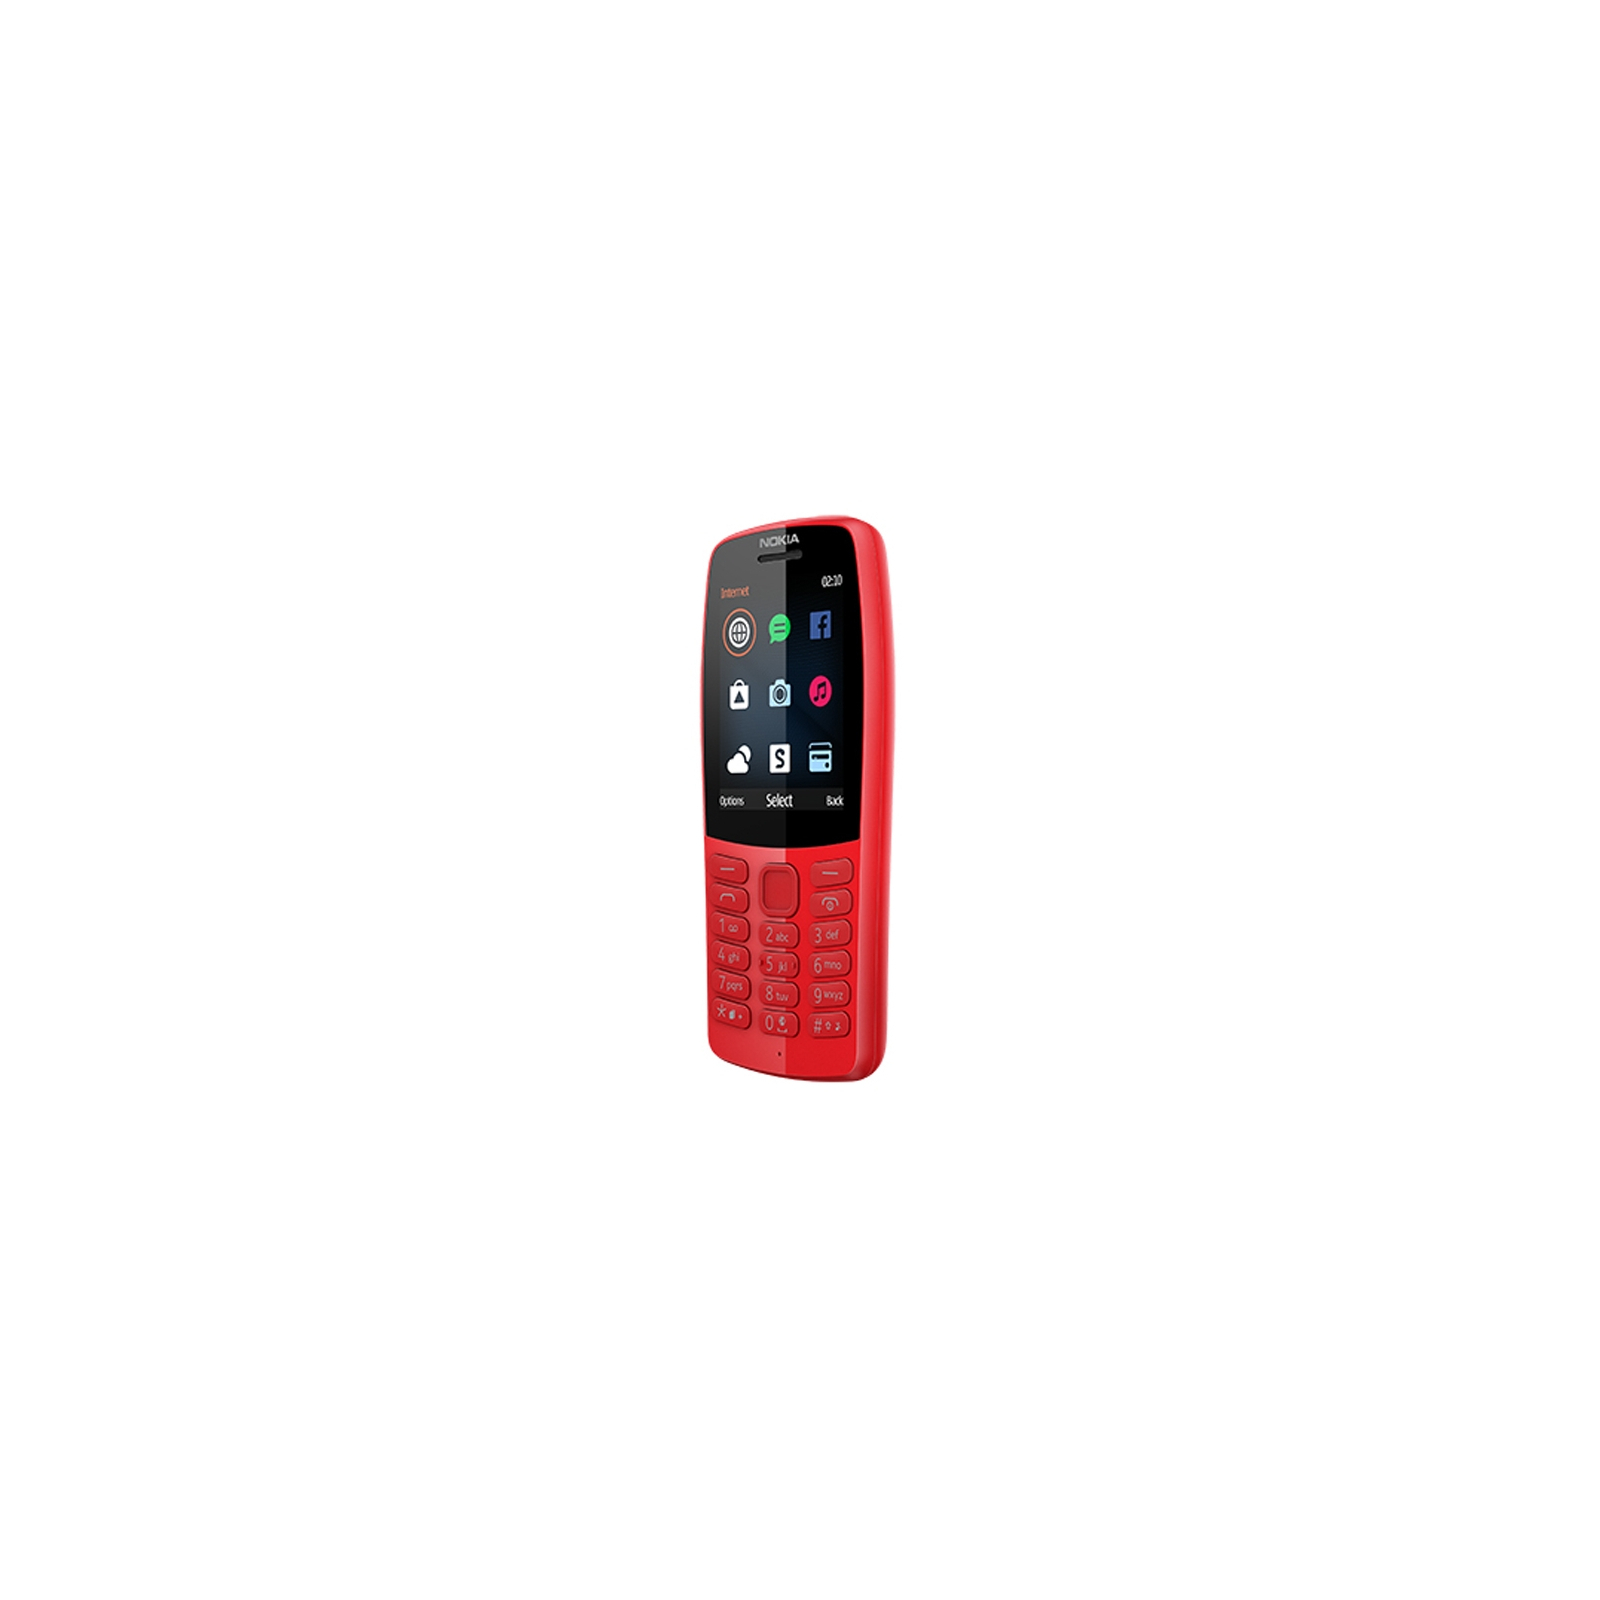 Мобильный телефон Nokia 210 DS Red (16OTRR01A01) изображение 3